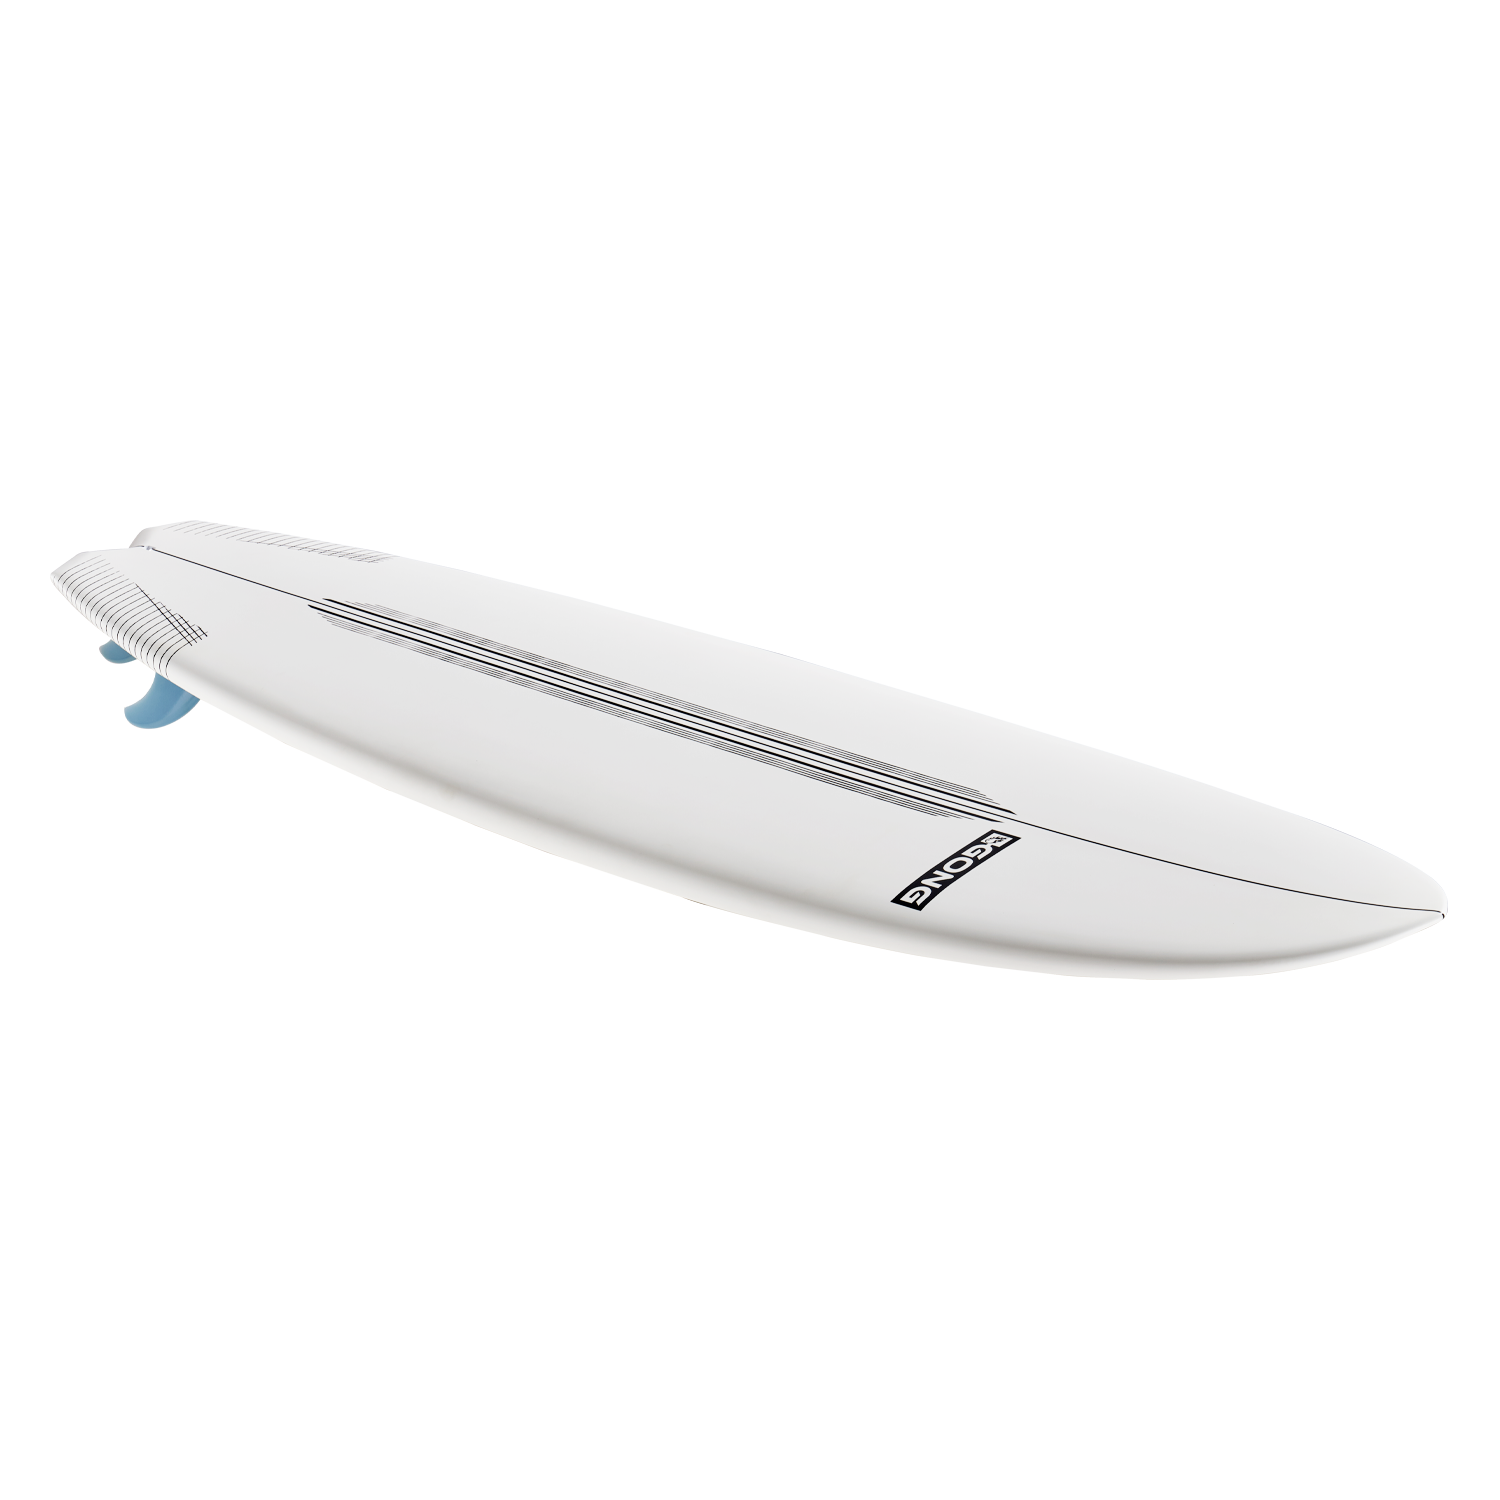 GONG | Surf Batmob WCKF